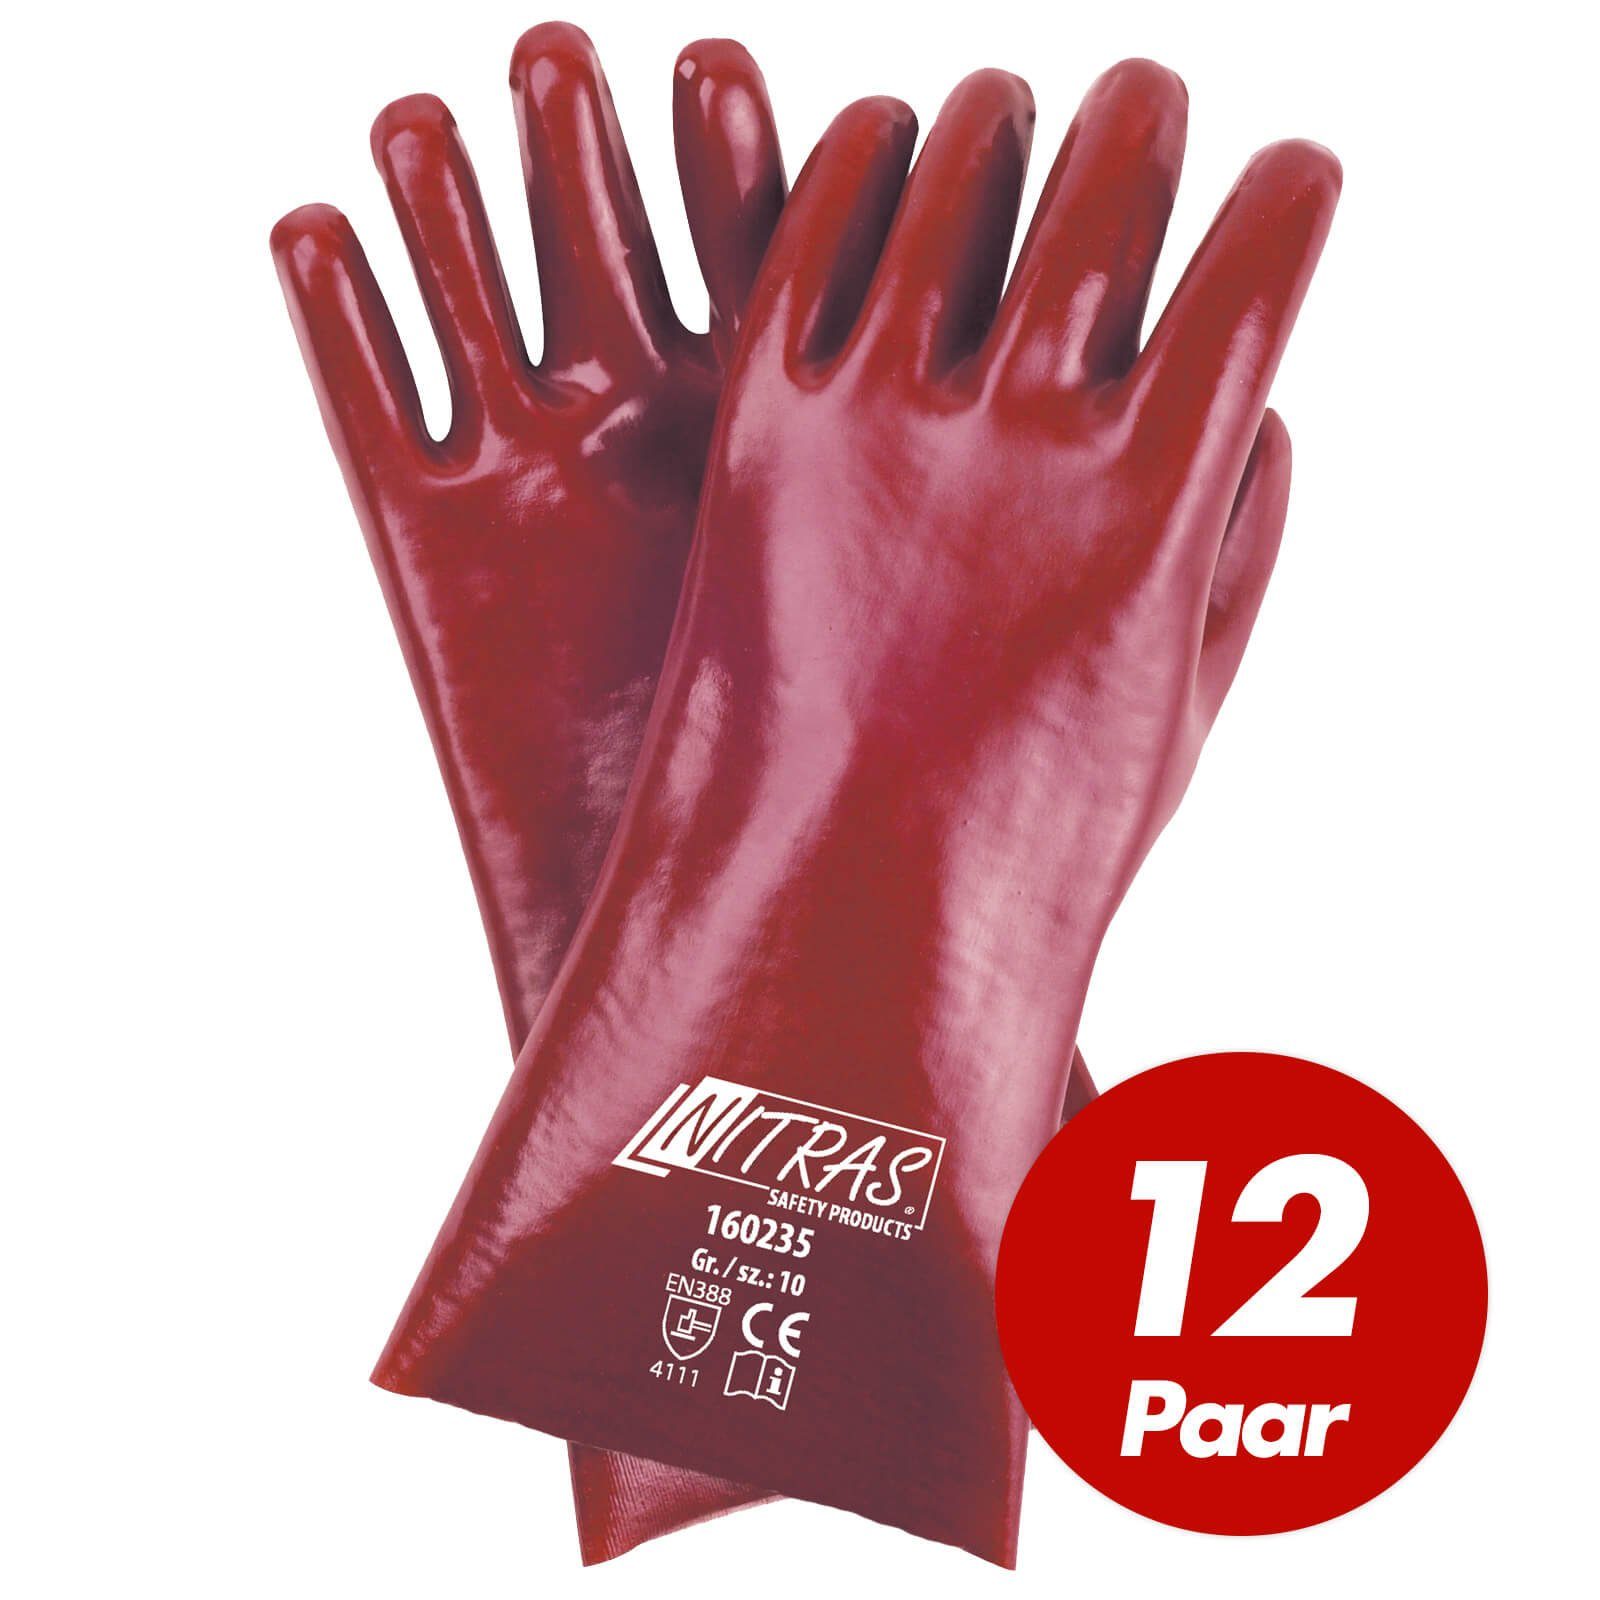 Nitras Nitril-Handschuhe Paar Chemikalienhandschuhe 35cm 160235 - (Spar-Set) PVC-Handschuhe 12 NITRAS VPE